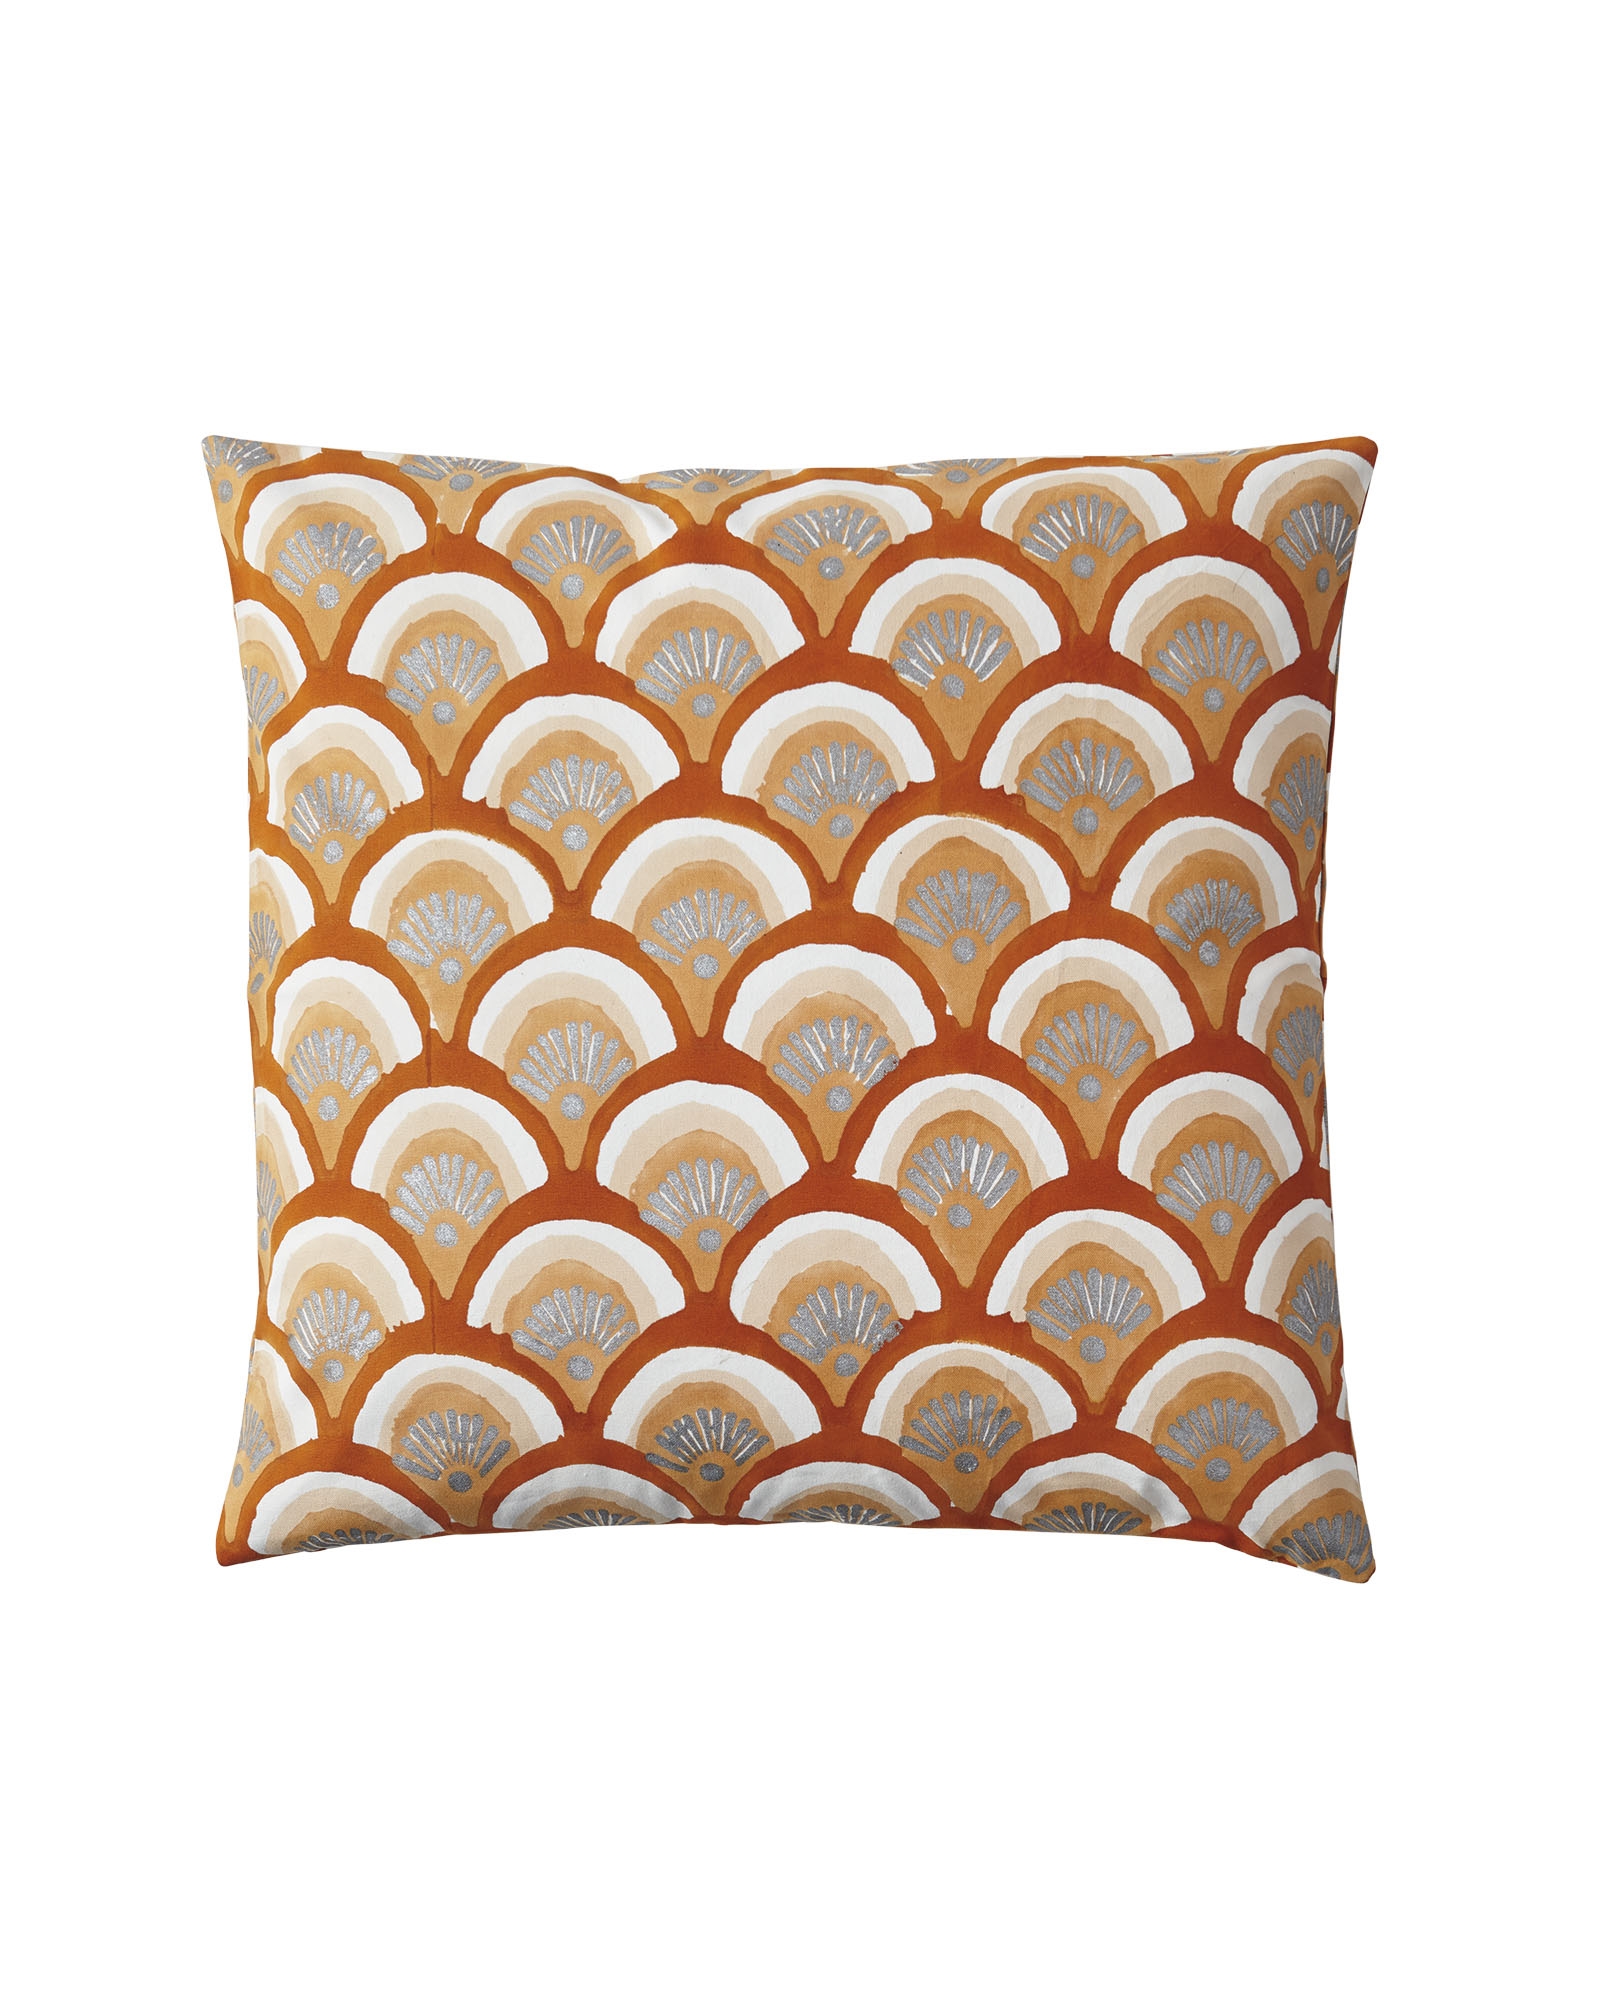 Kyoto Pillow Covers - Saffron - Image 0